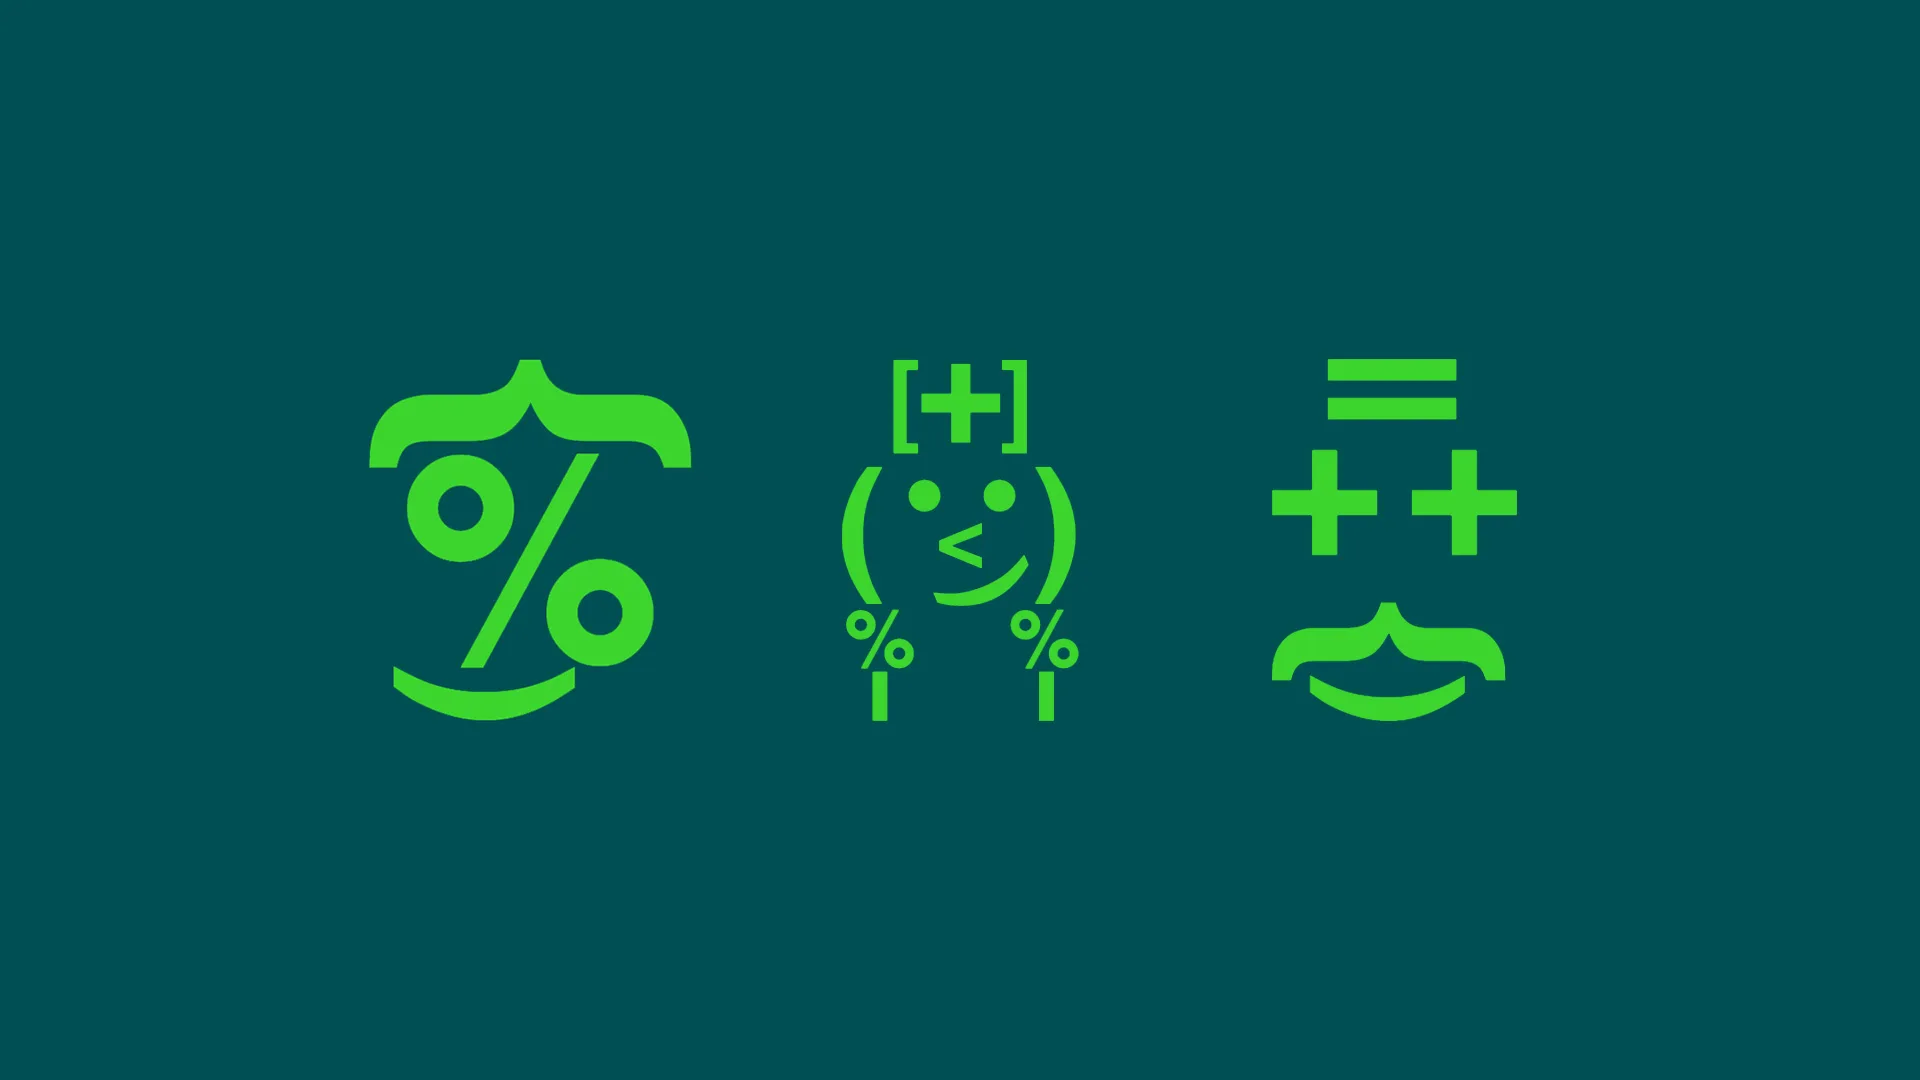 Illustrerade symboler med olika ekonomitecken som plus och minus som bildar figurer likt emojis